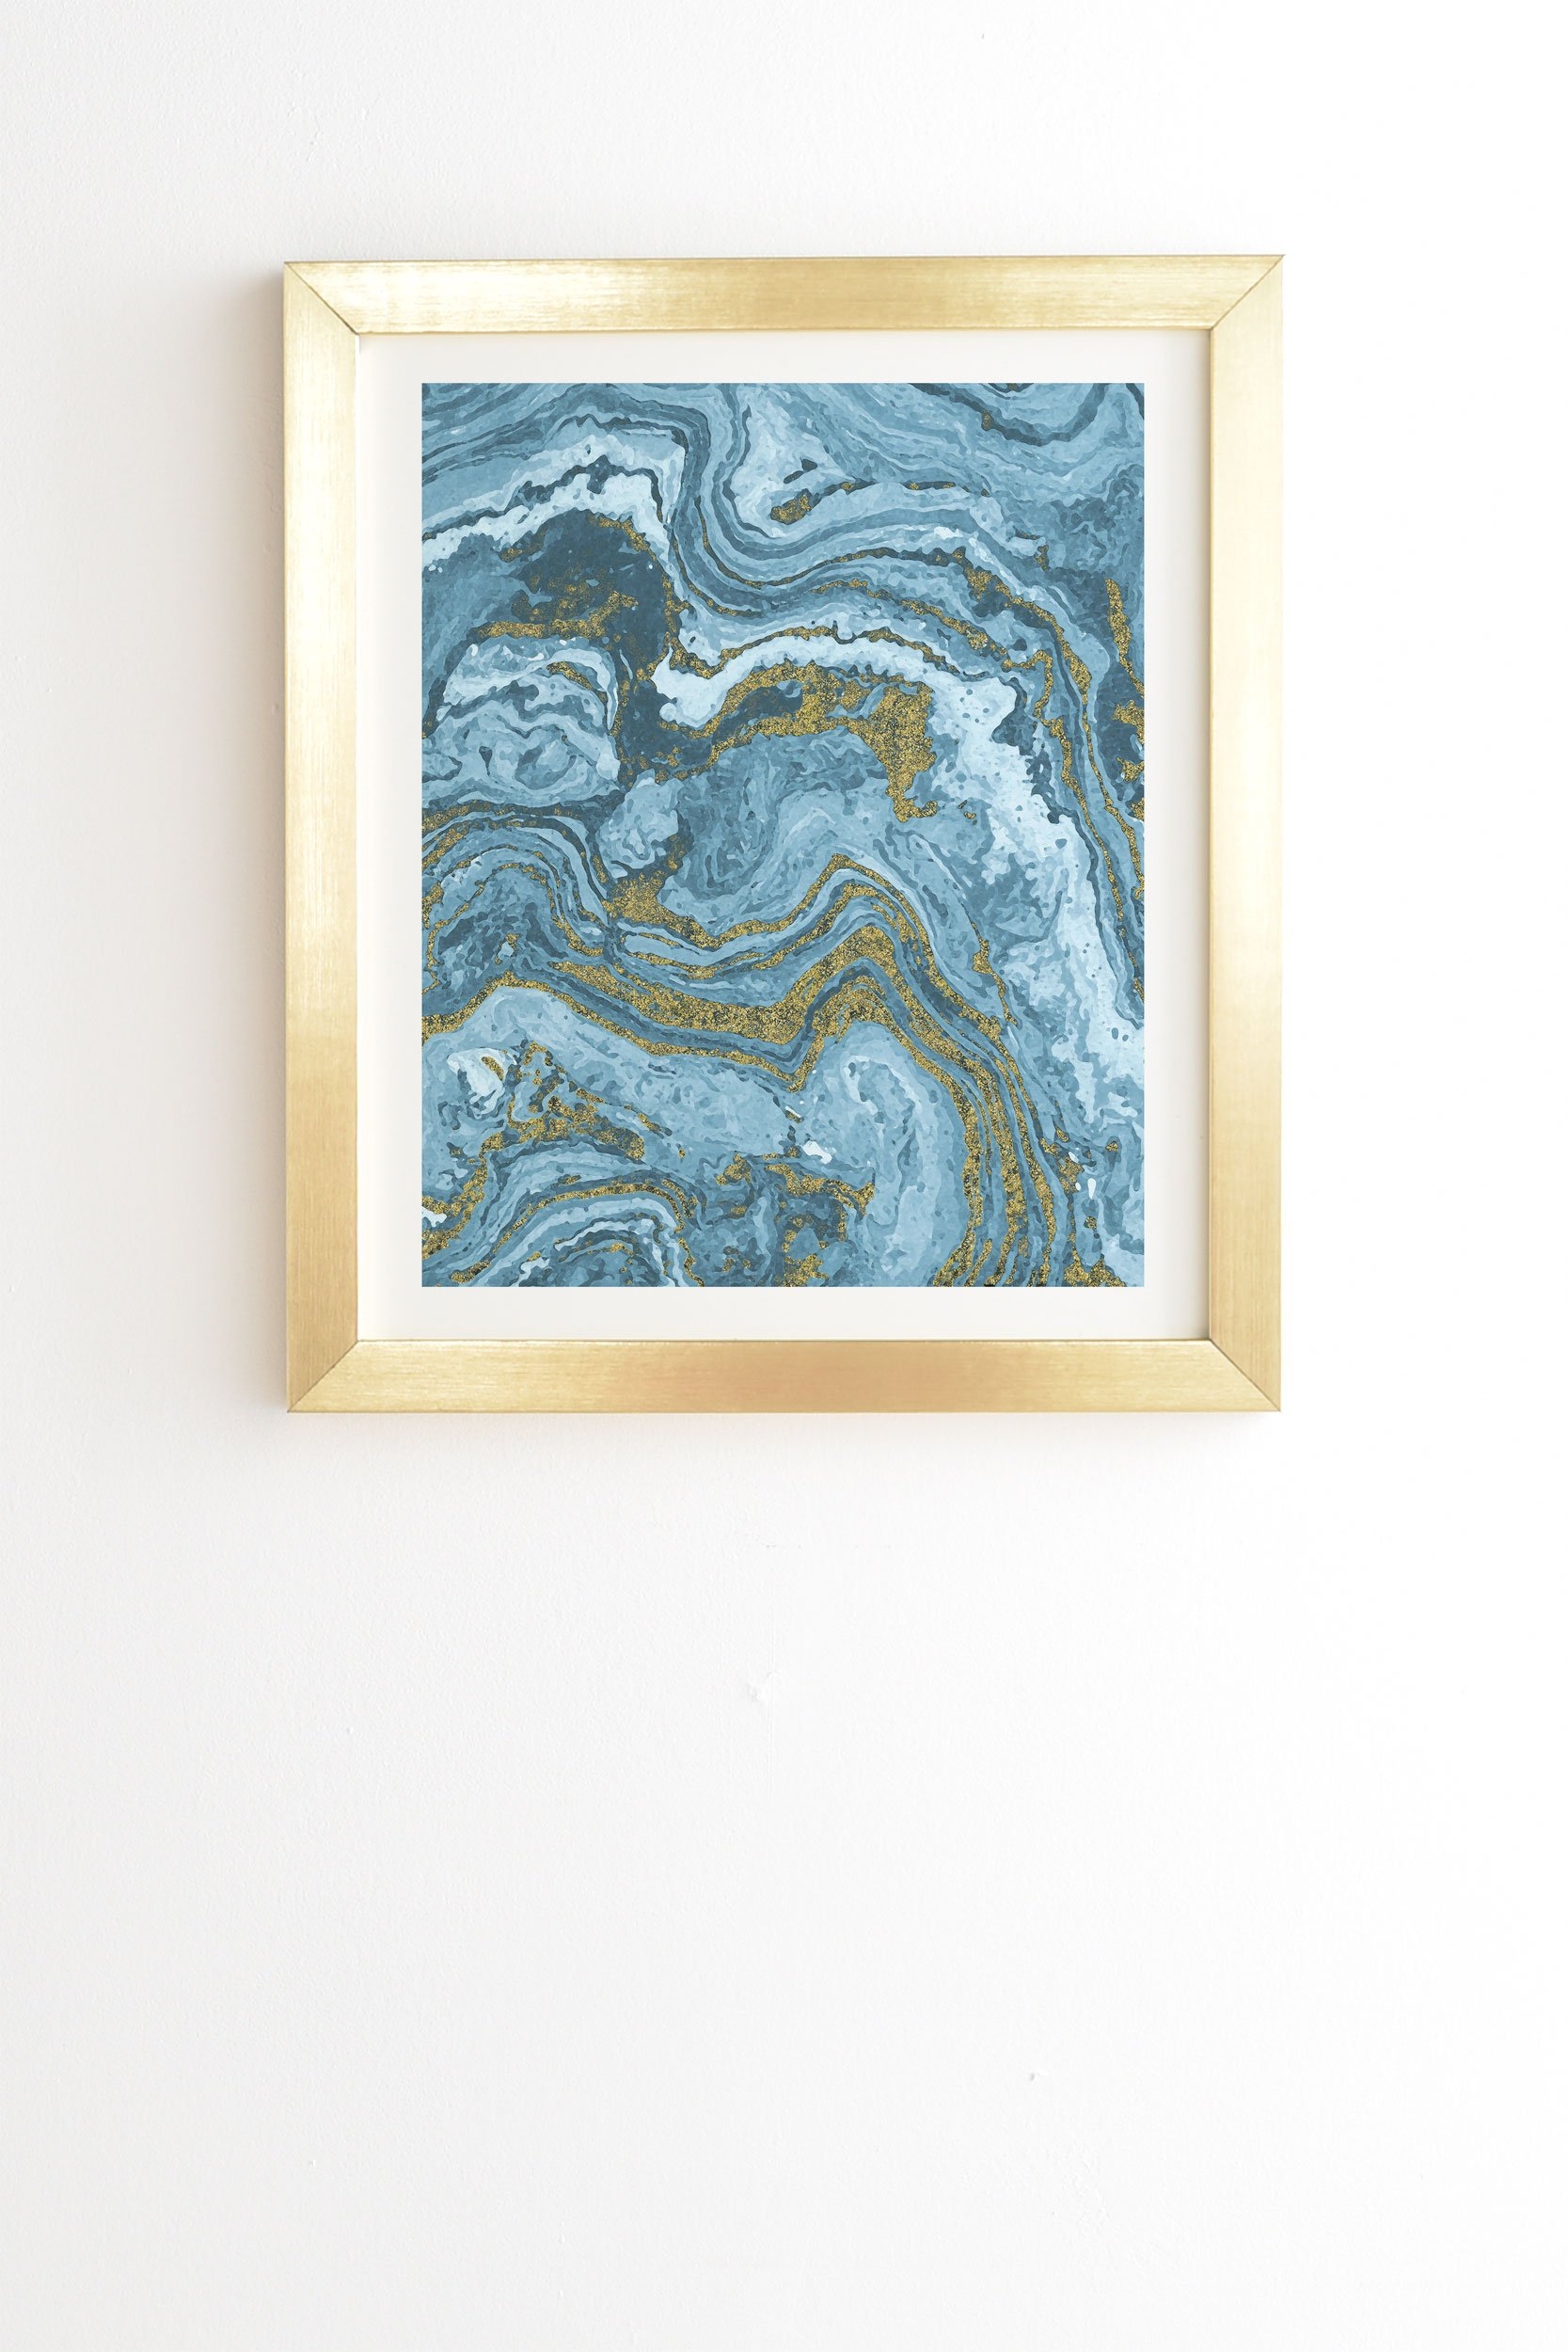 Emanuela Carratoni Gold Waves on Blue Gold Framed Wall Art - 8" x 9.5" - Image 0